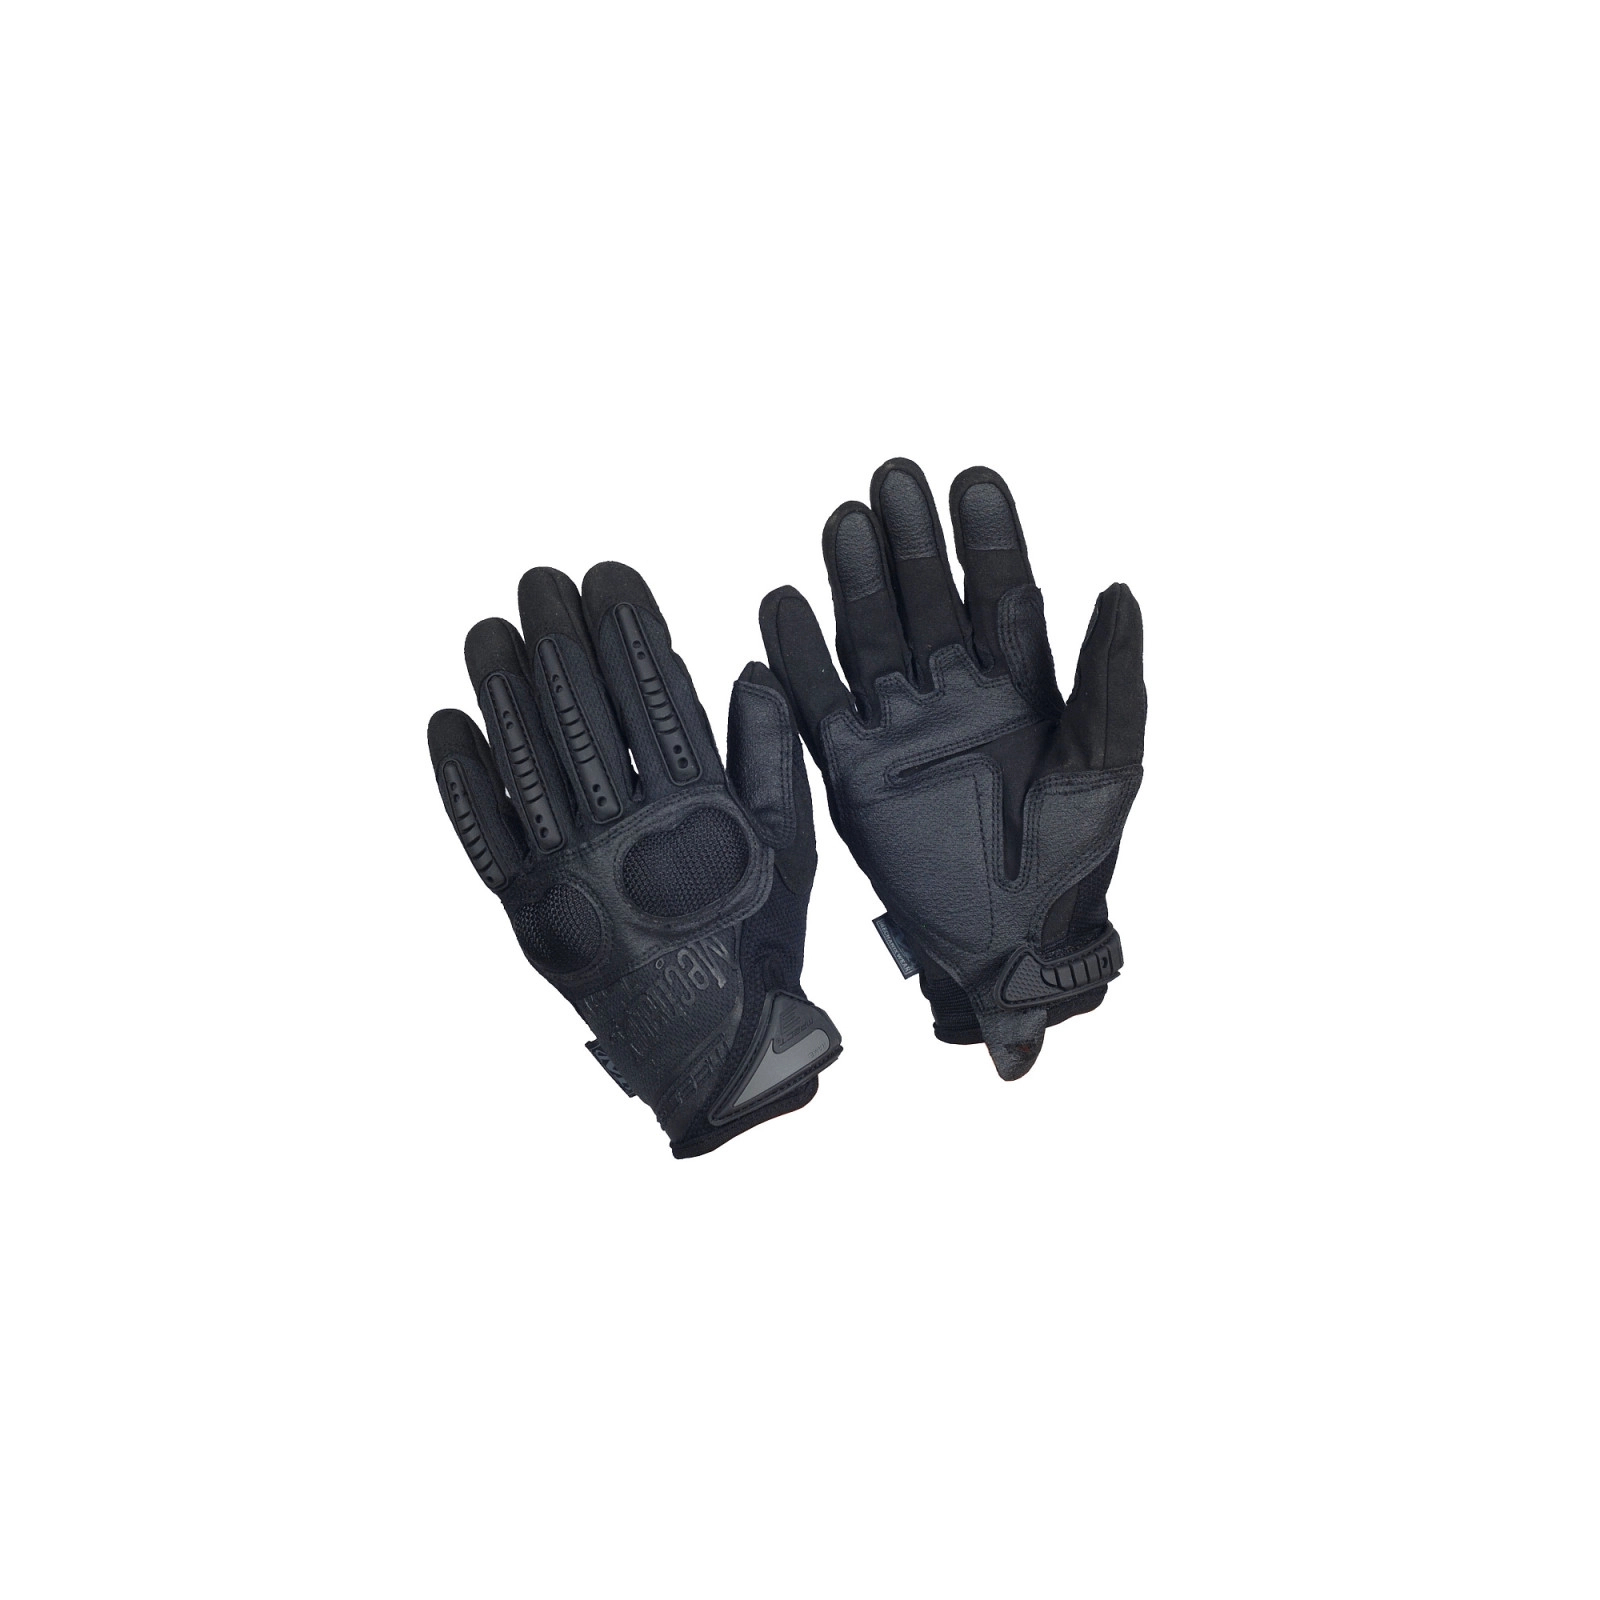 Защитные перчатки Mechanix M-Pact 3 Covert (LG) (MP3-55-010) изображение 2